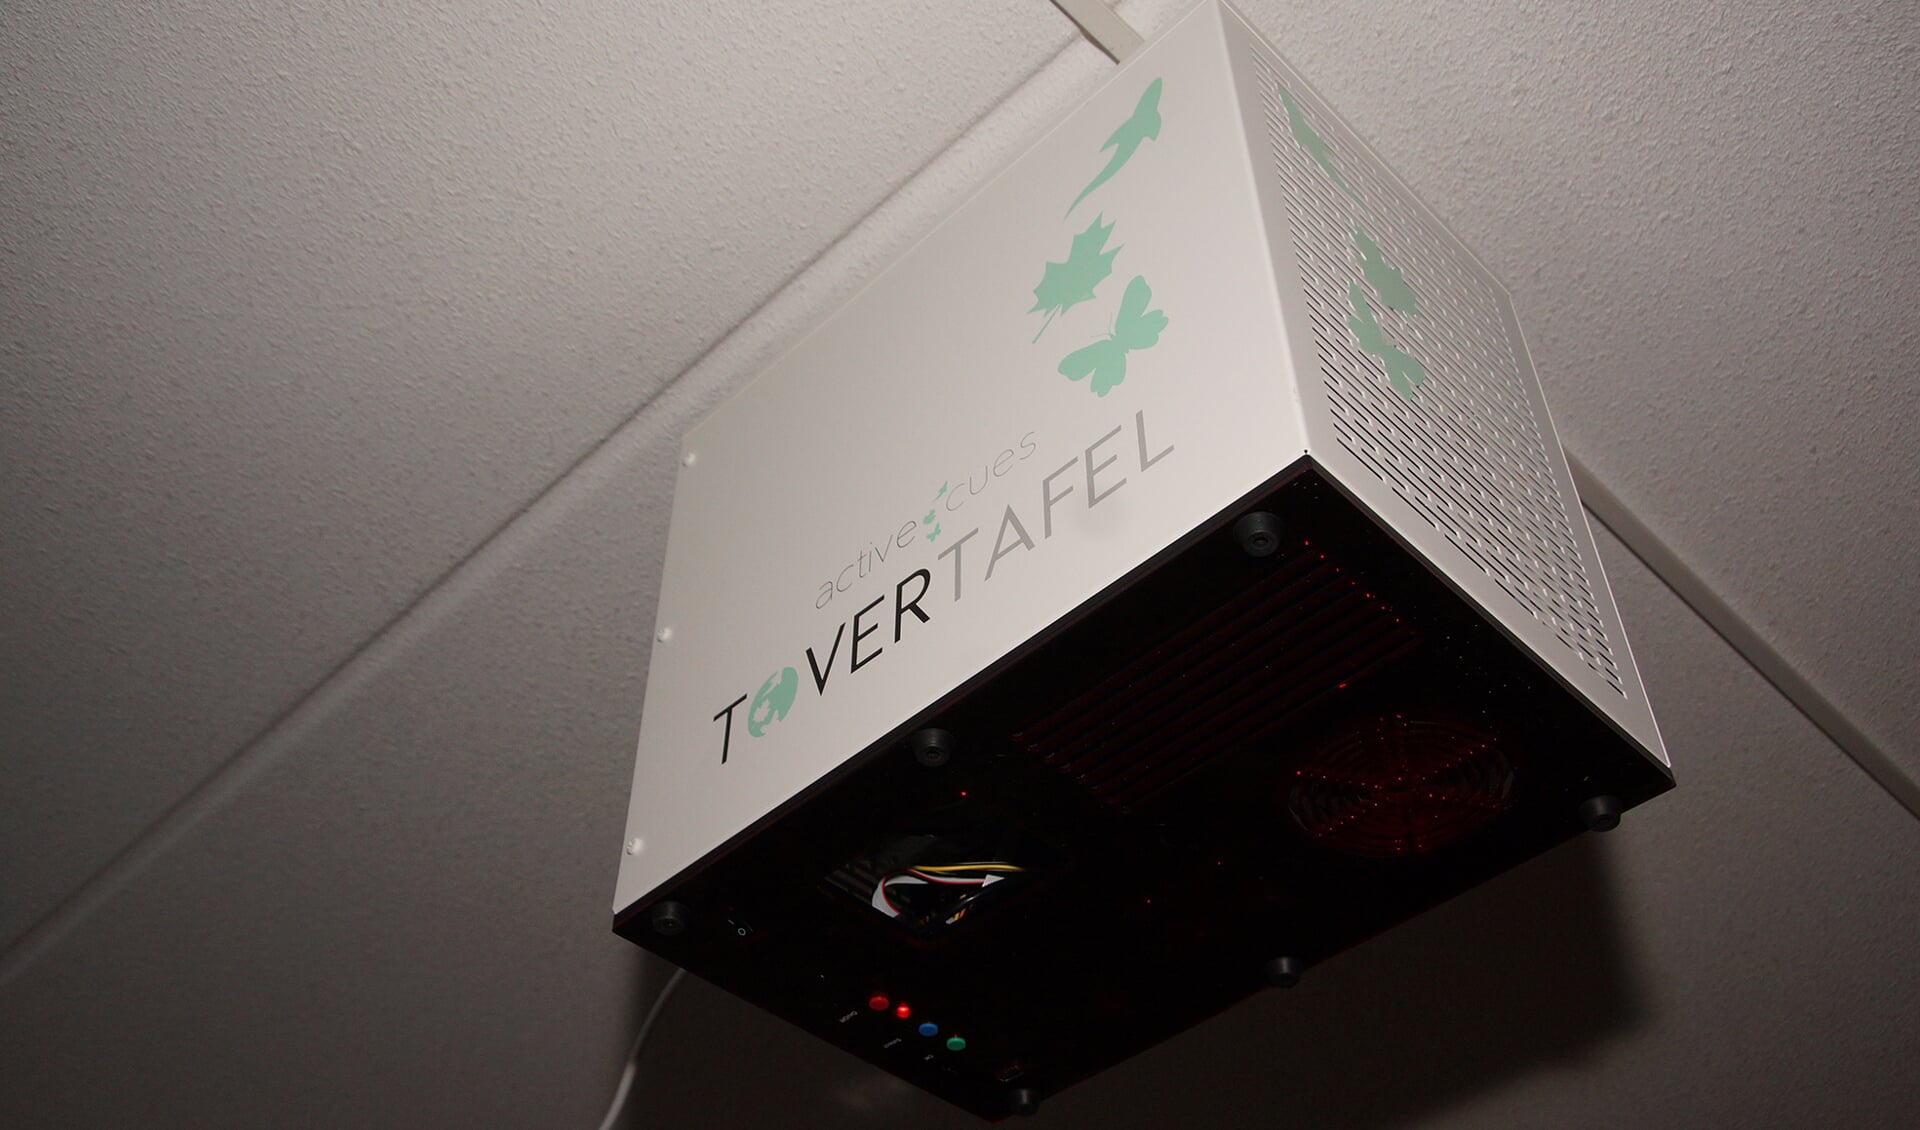 De projector die voor de Tovertafel-beelden zorgt. Foto: Frank Vinkenvleugel